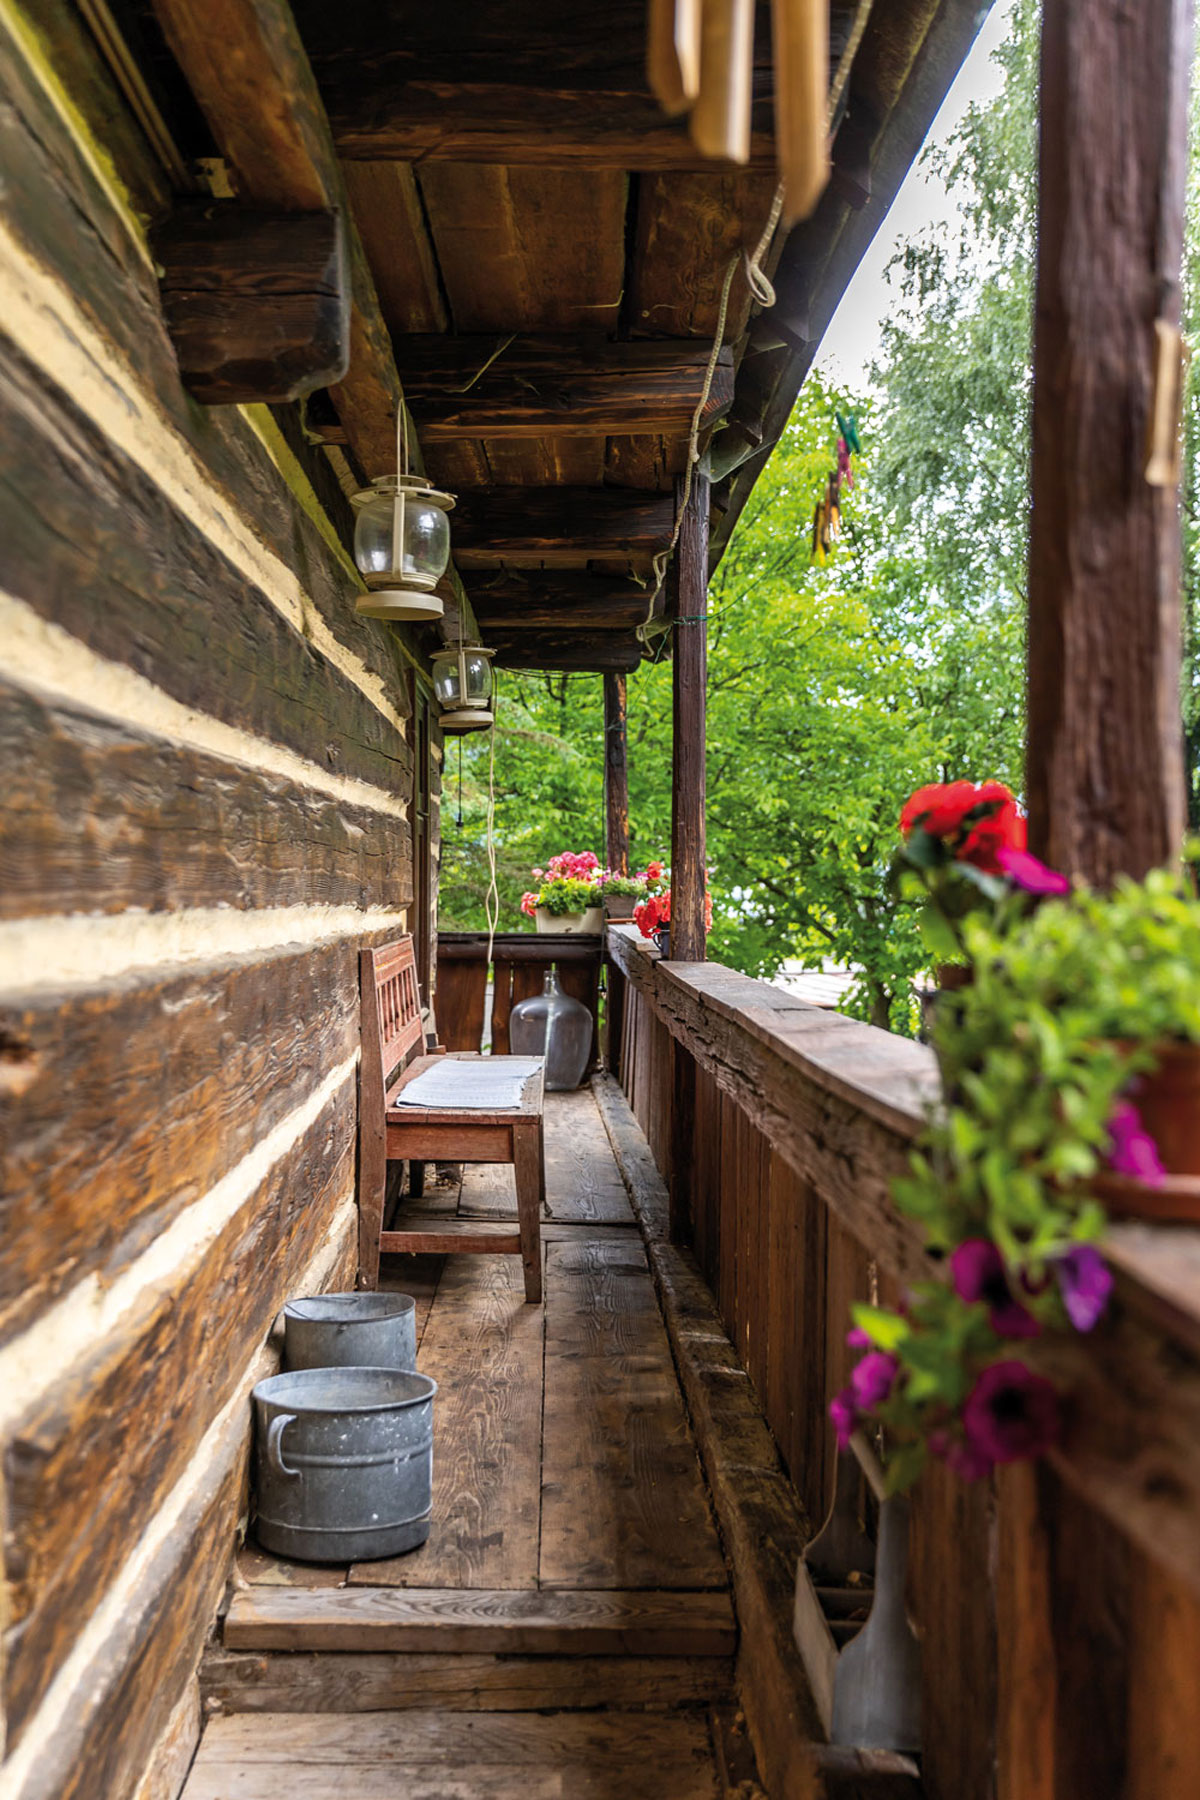 Dřevěná veranda-Tradiční roubenka